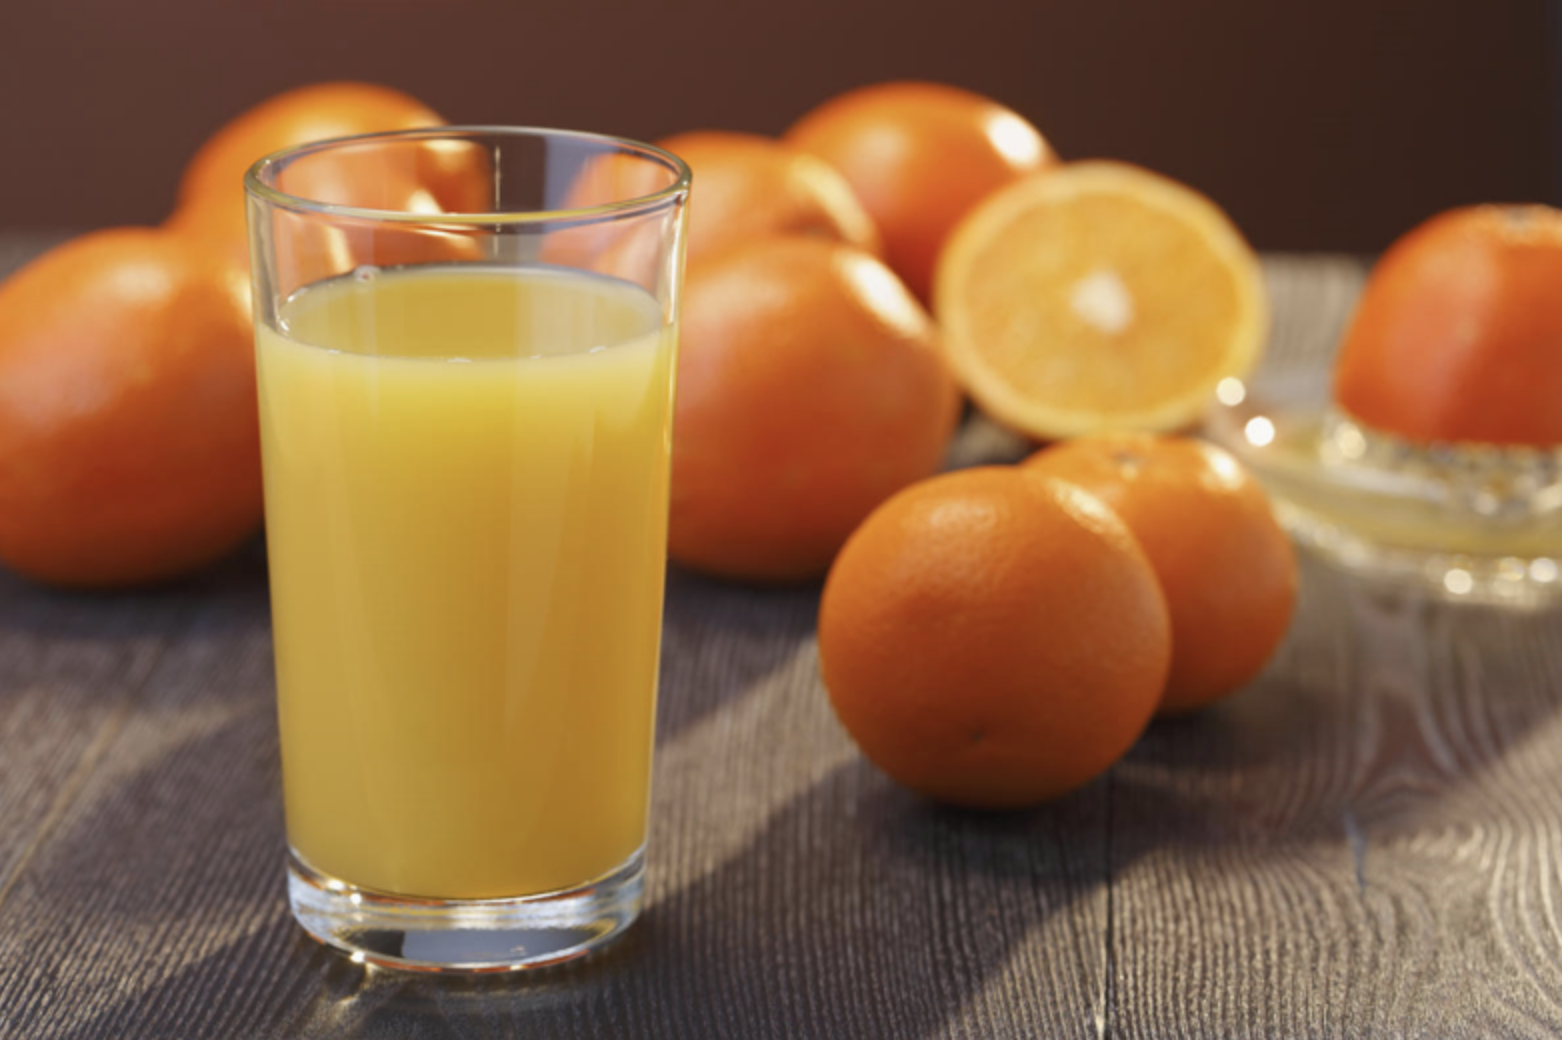 Señalan que el jugo de naranja puede ser más letal que un refresco | El Imparcial de Oaxaca